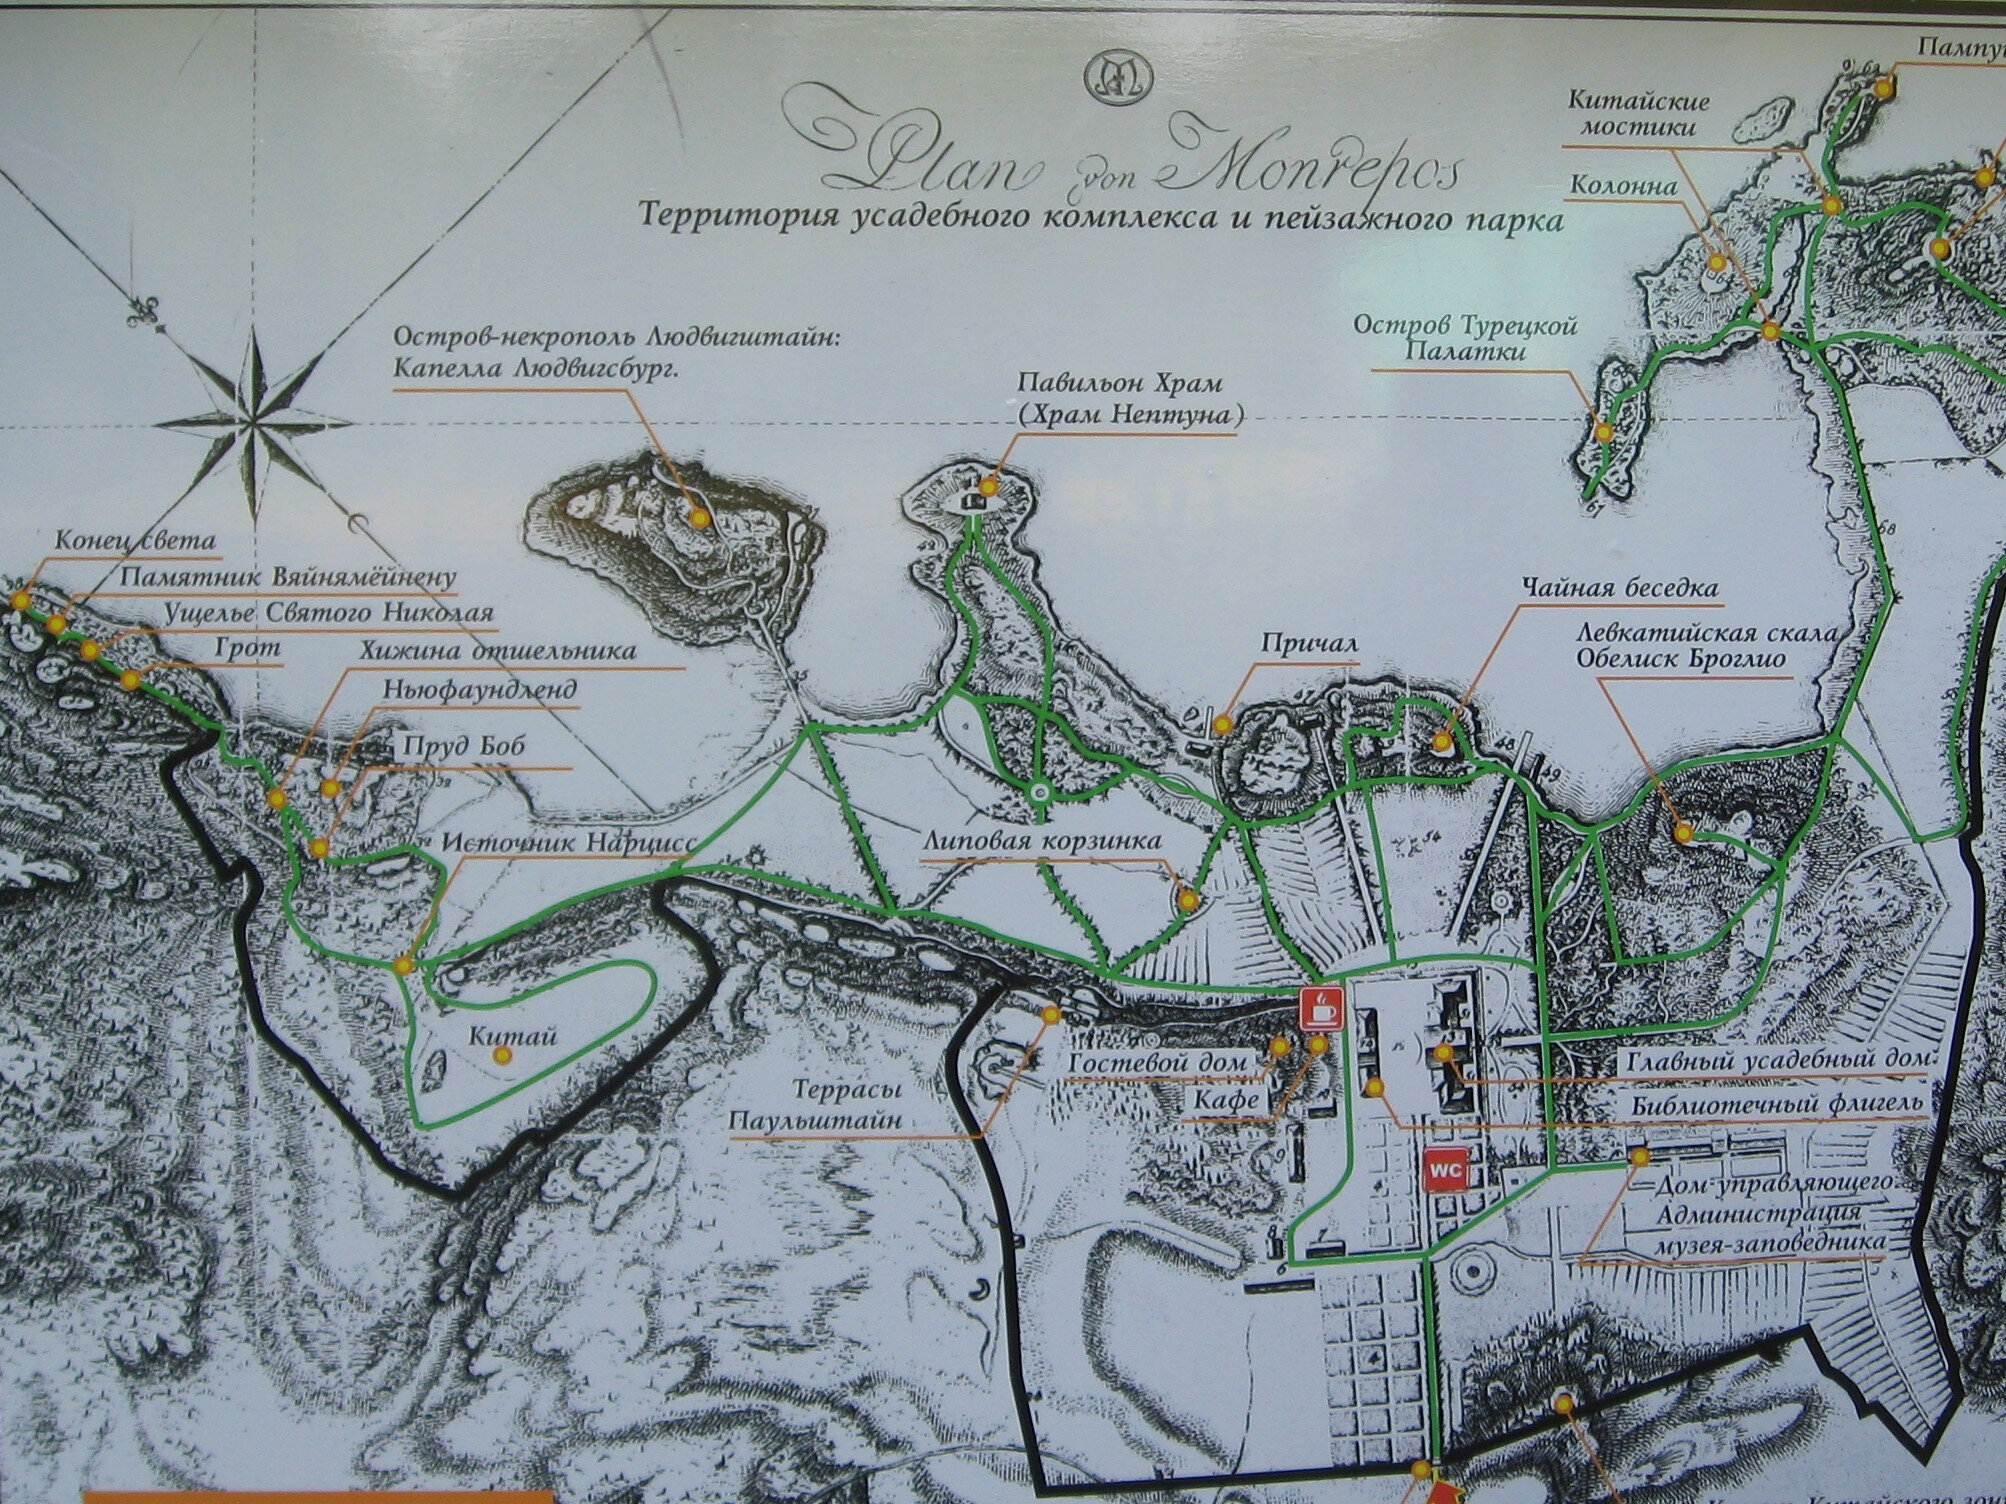 Лучше всего заранее спланировать маршрут прогулки по карте, чтобы ненароком не заблудиться в карельском лесу.